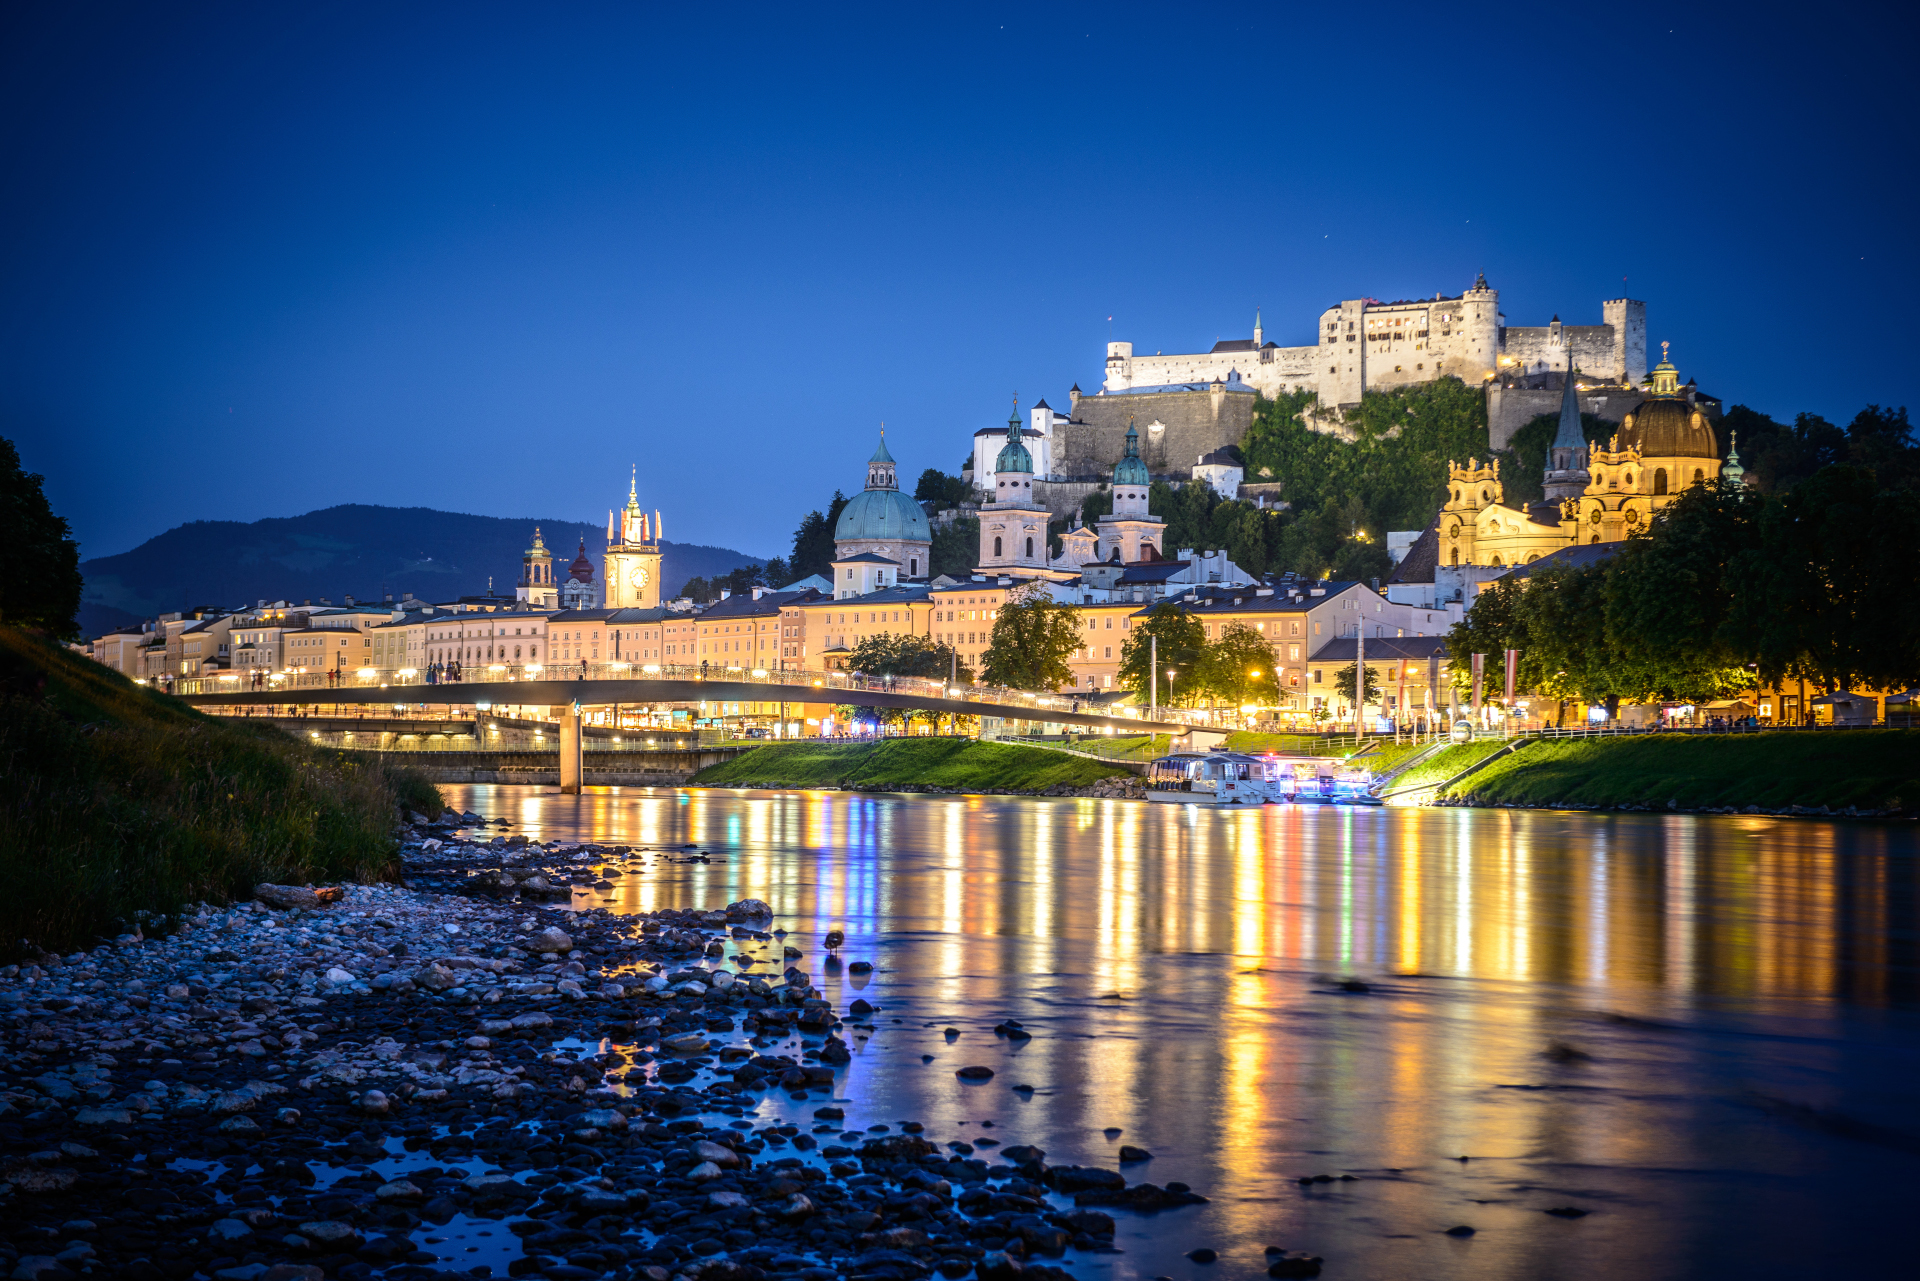  © Tourismus Salzburg - Blick vom rechten Salzachufer auf die Salzburger Altstadt mit Festung Hohensalzburg